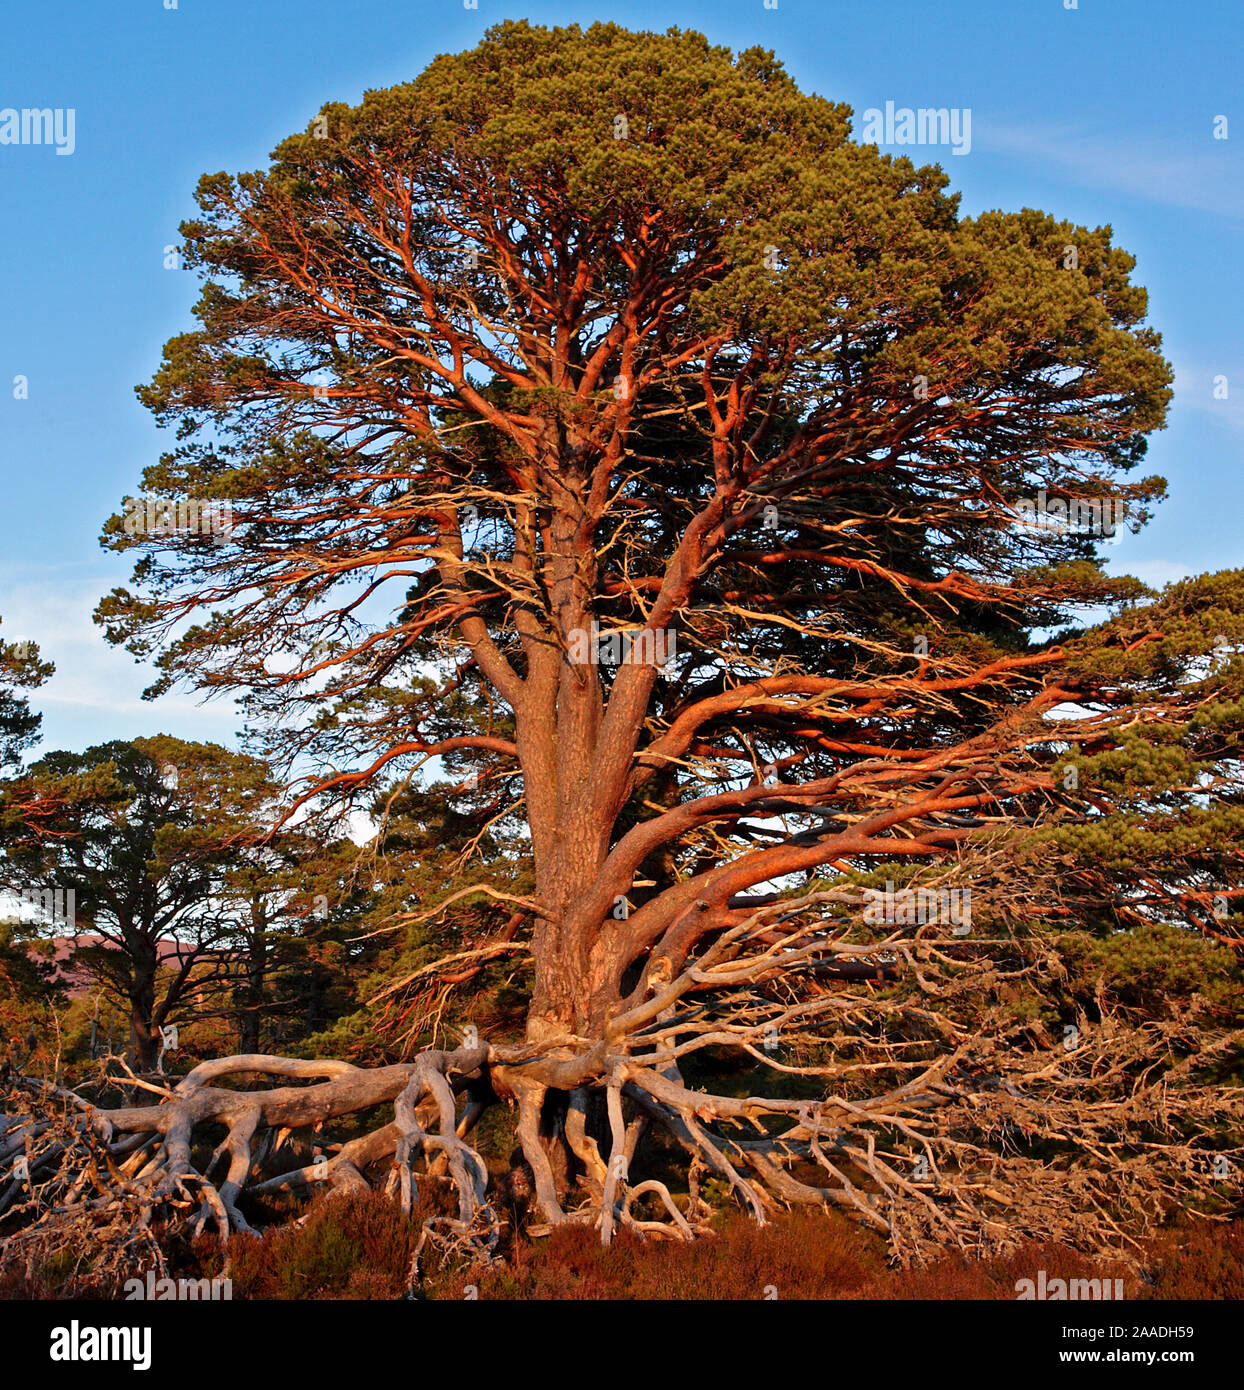 Arbre de pin sylvestre antique (Pinus sylvestris) avec dead branches basses, dans la lumière du soir. Le Parc National de Cairngorms, Highlands, Scotland, UK. Février 2008. Banque D'Images